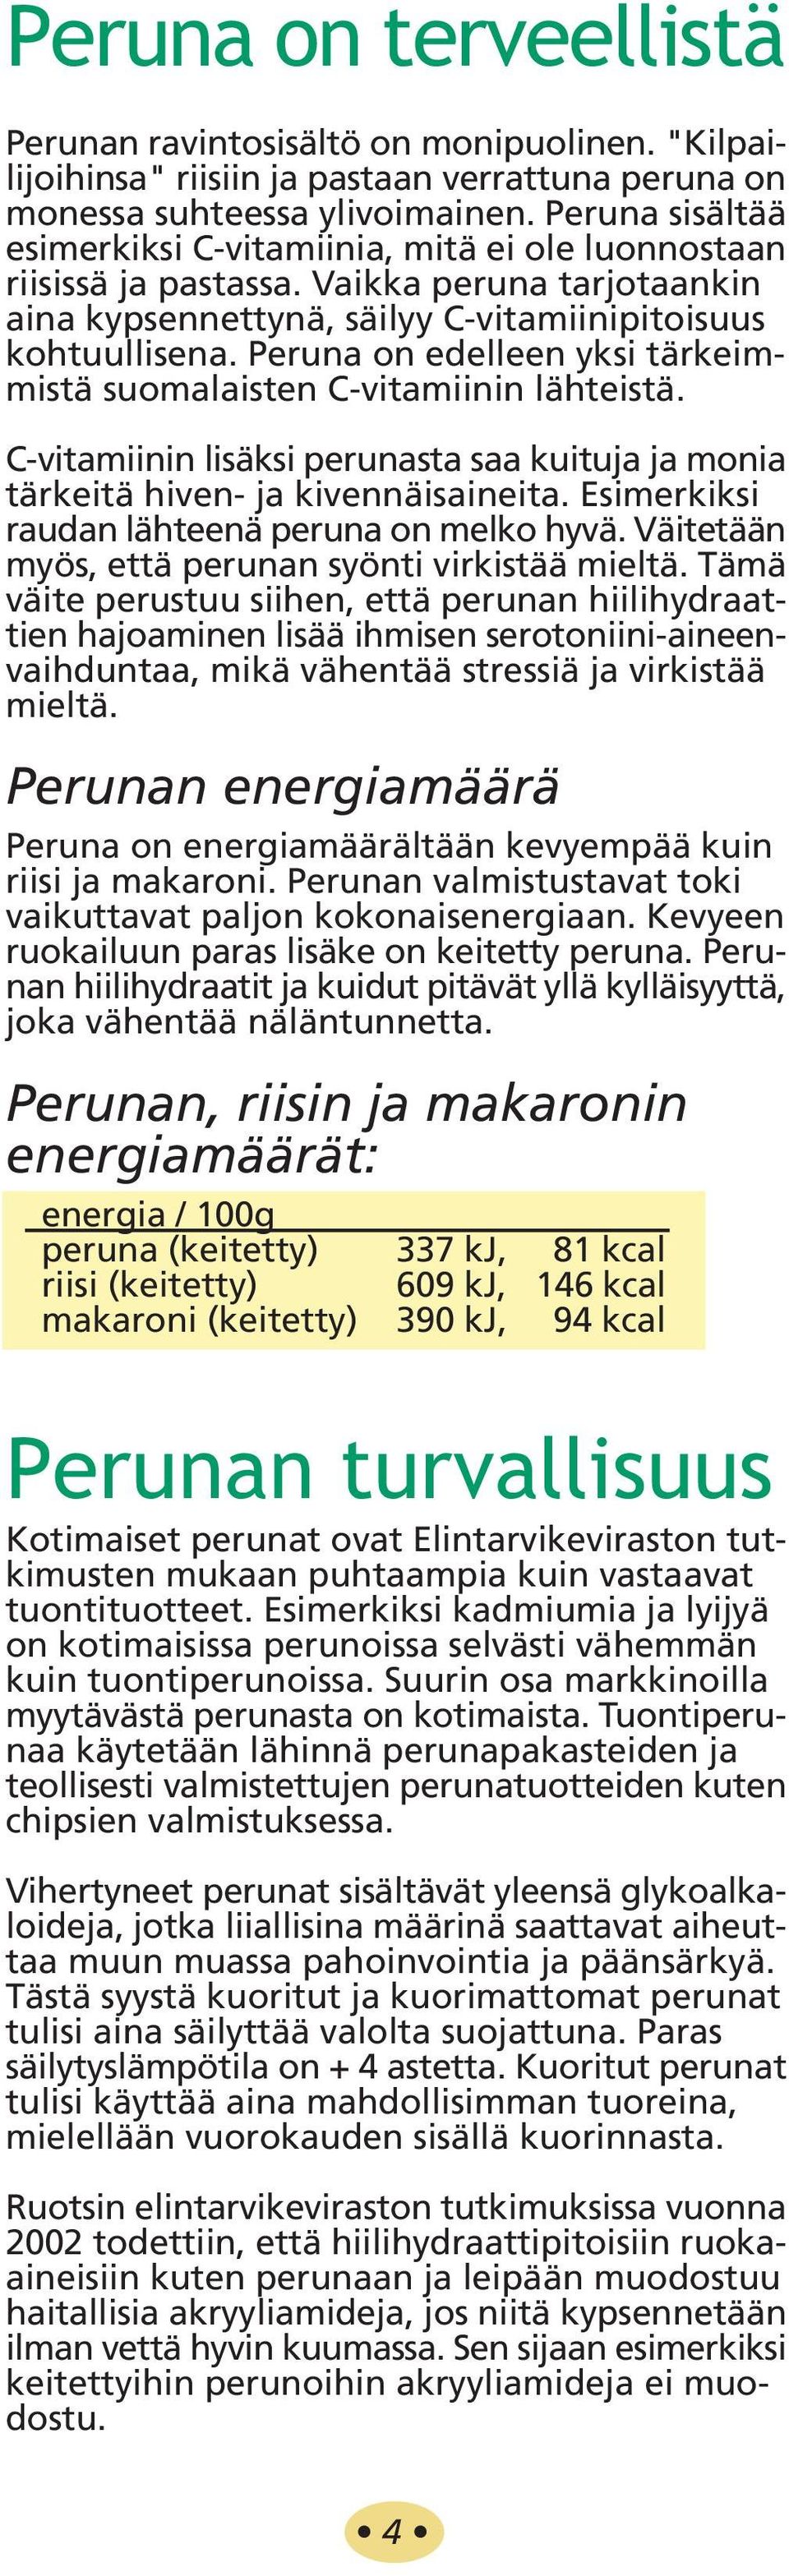 Peruna on edelleen yksi tärkeimmistä suomalaisten C-vitamiinin lähteistä. C-vitamiinin lisäksi perunasta saa kuituja ja monia tärkeitä hiven- ja kivennäisaineita.